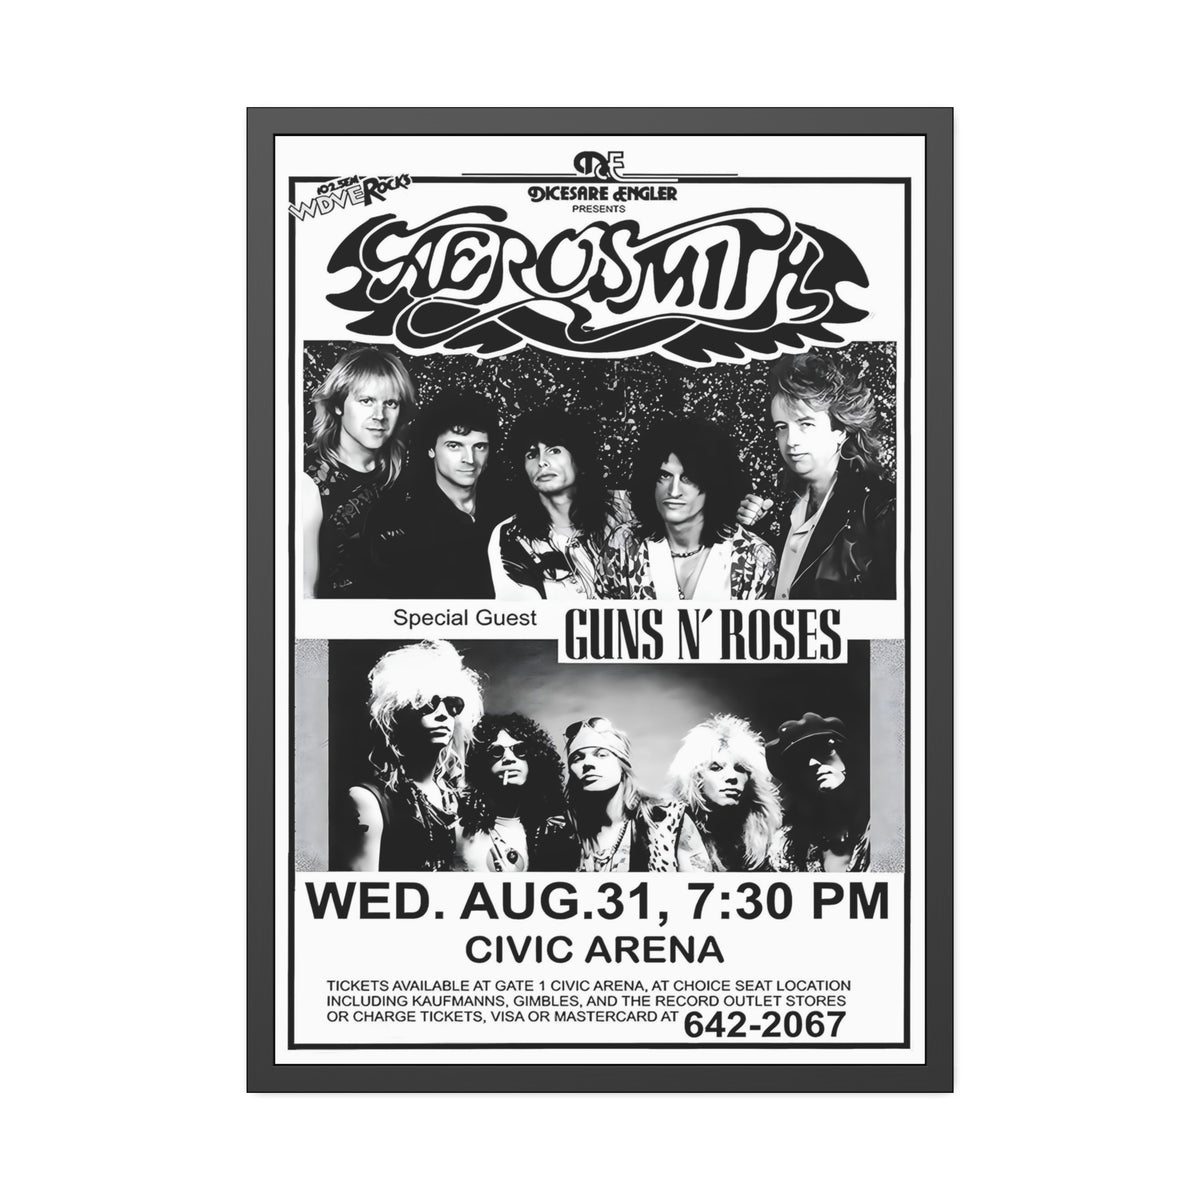 Aerosmith Concert Poster II